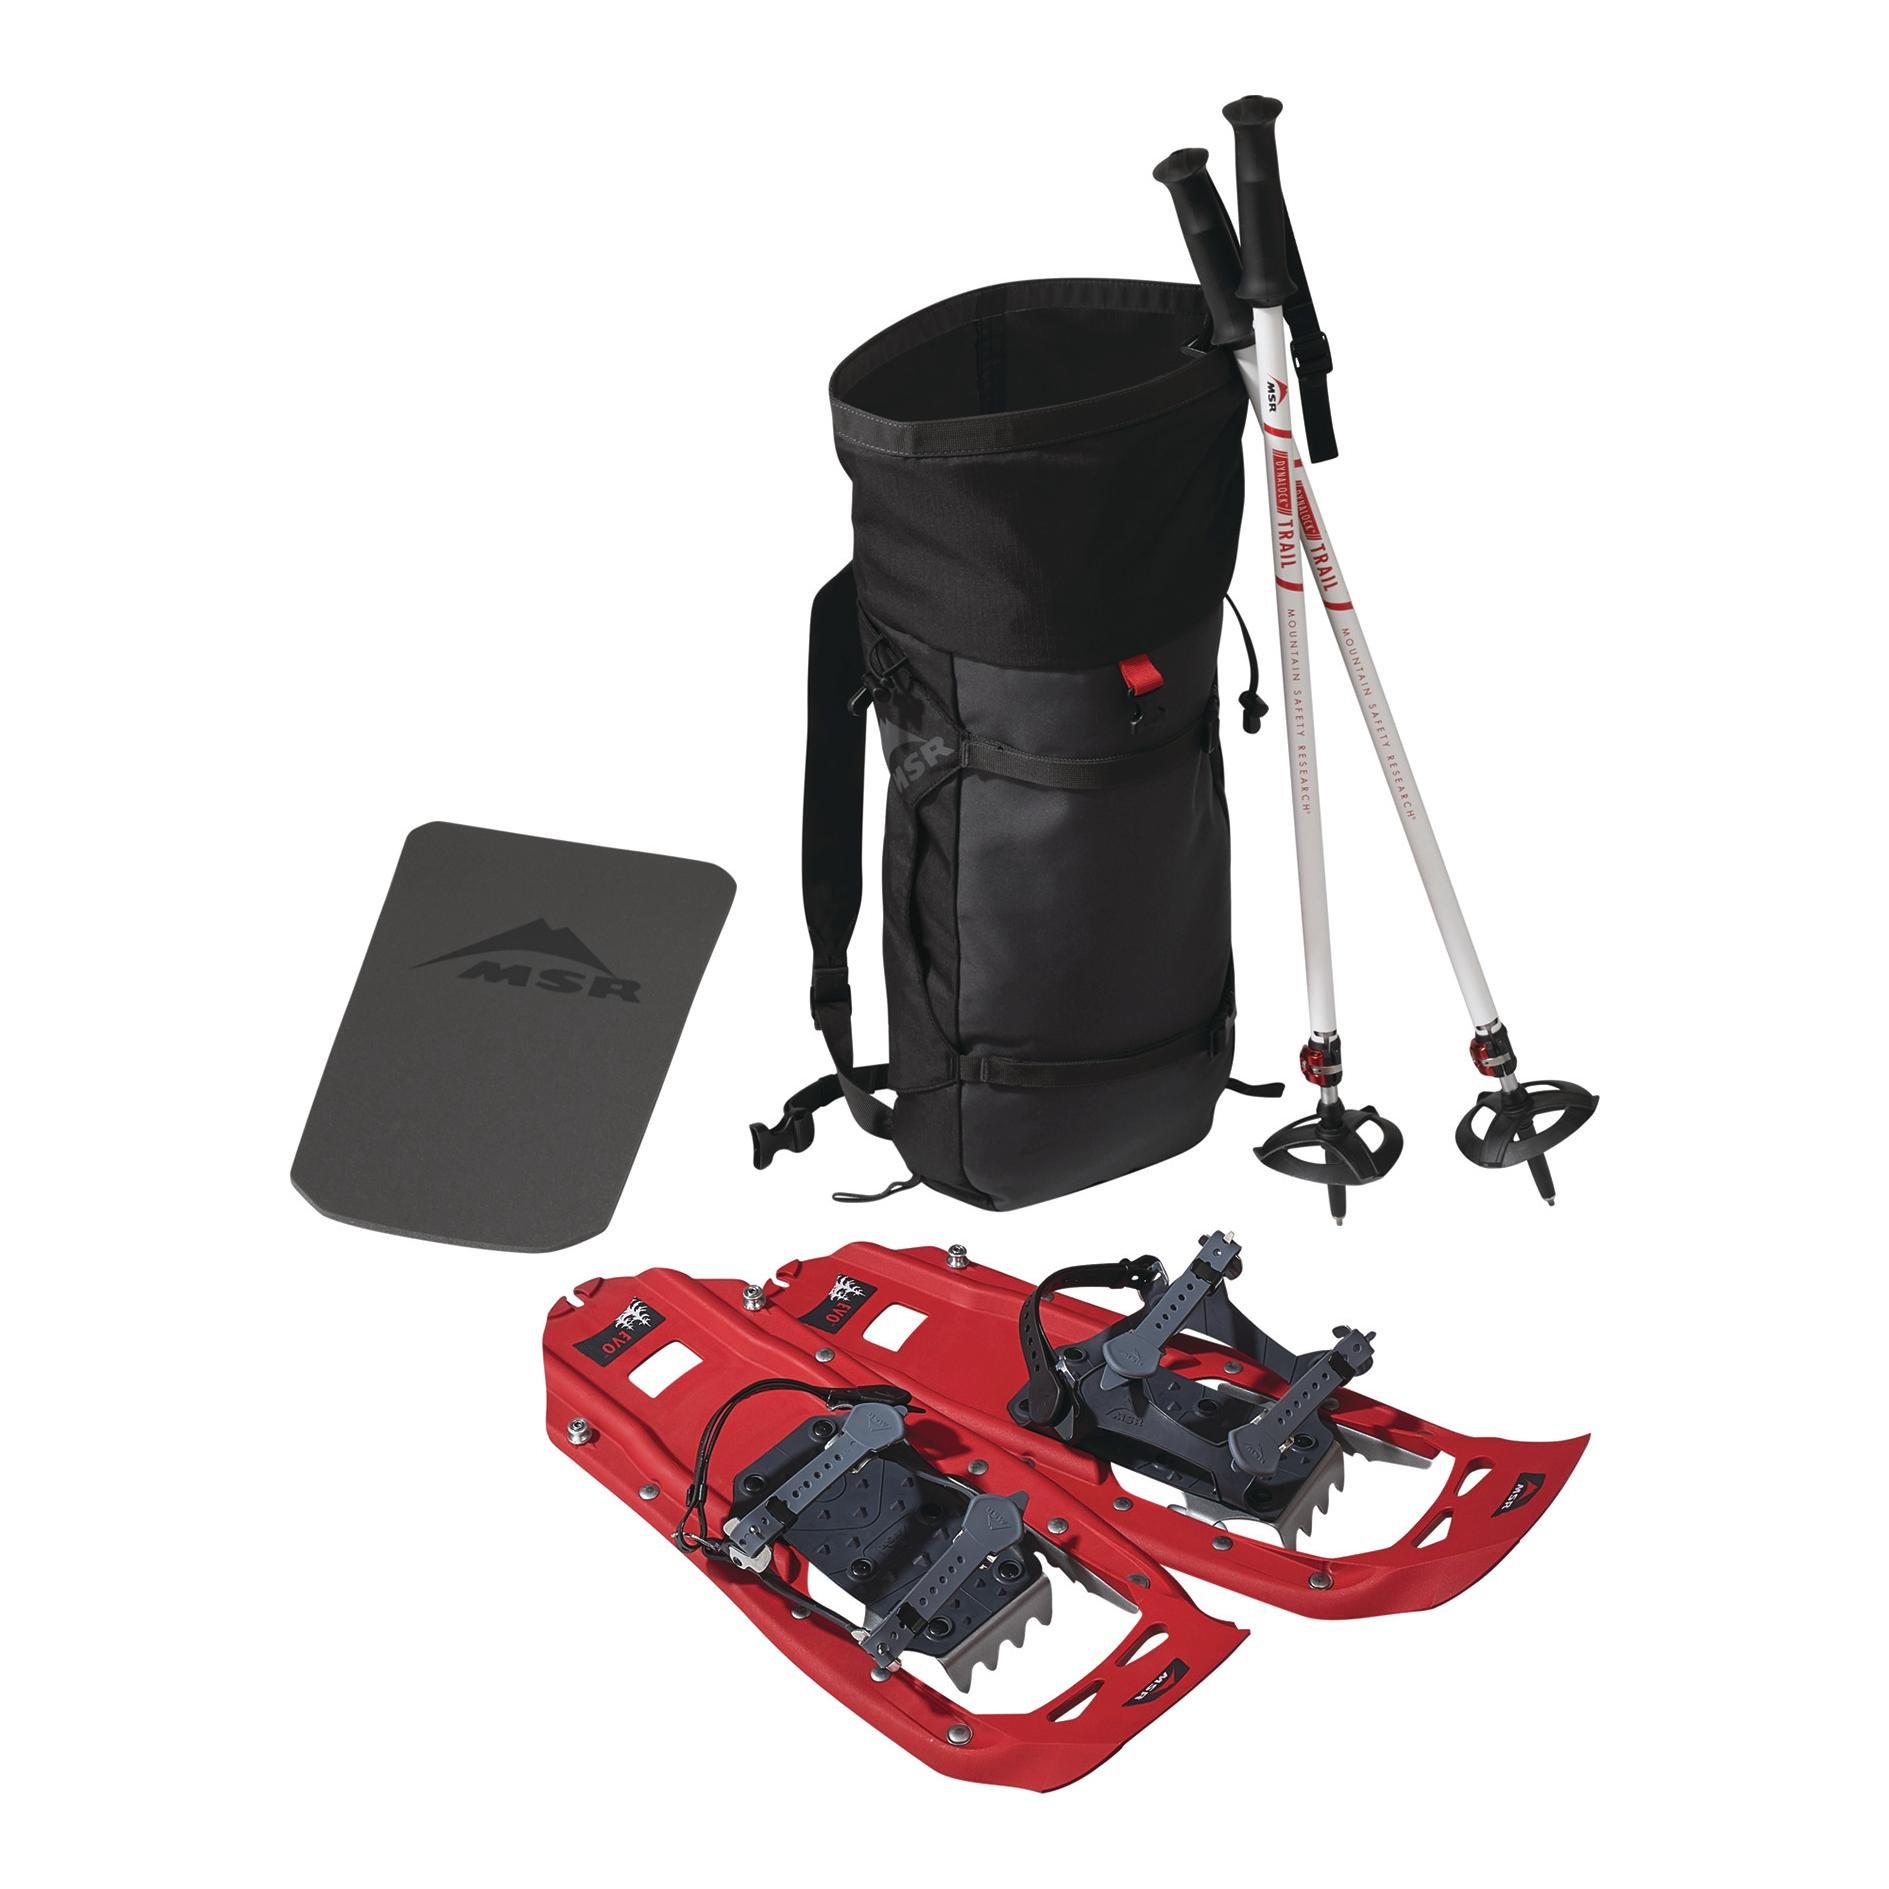 MSR Snösko EVO kit – paket med ryggsäck och stavar